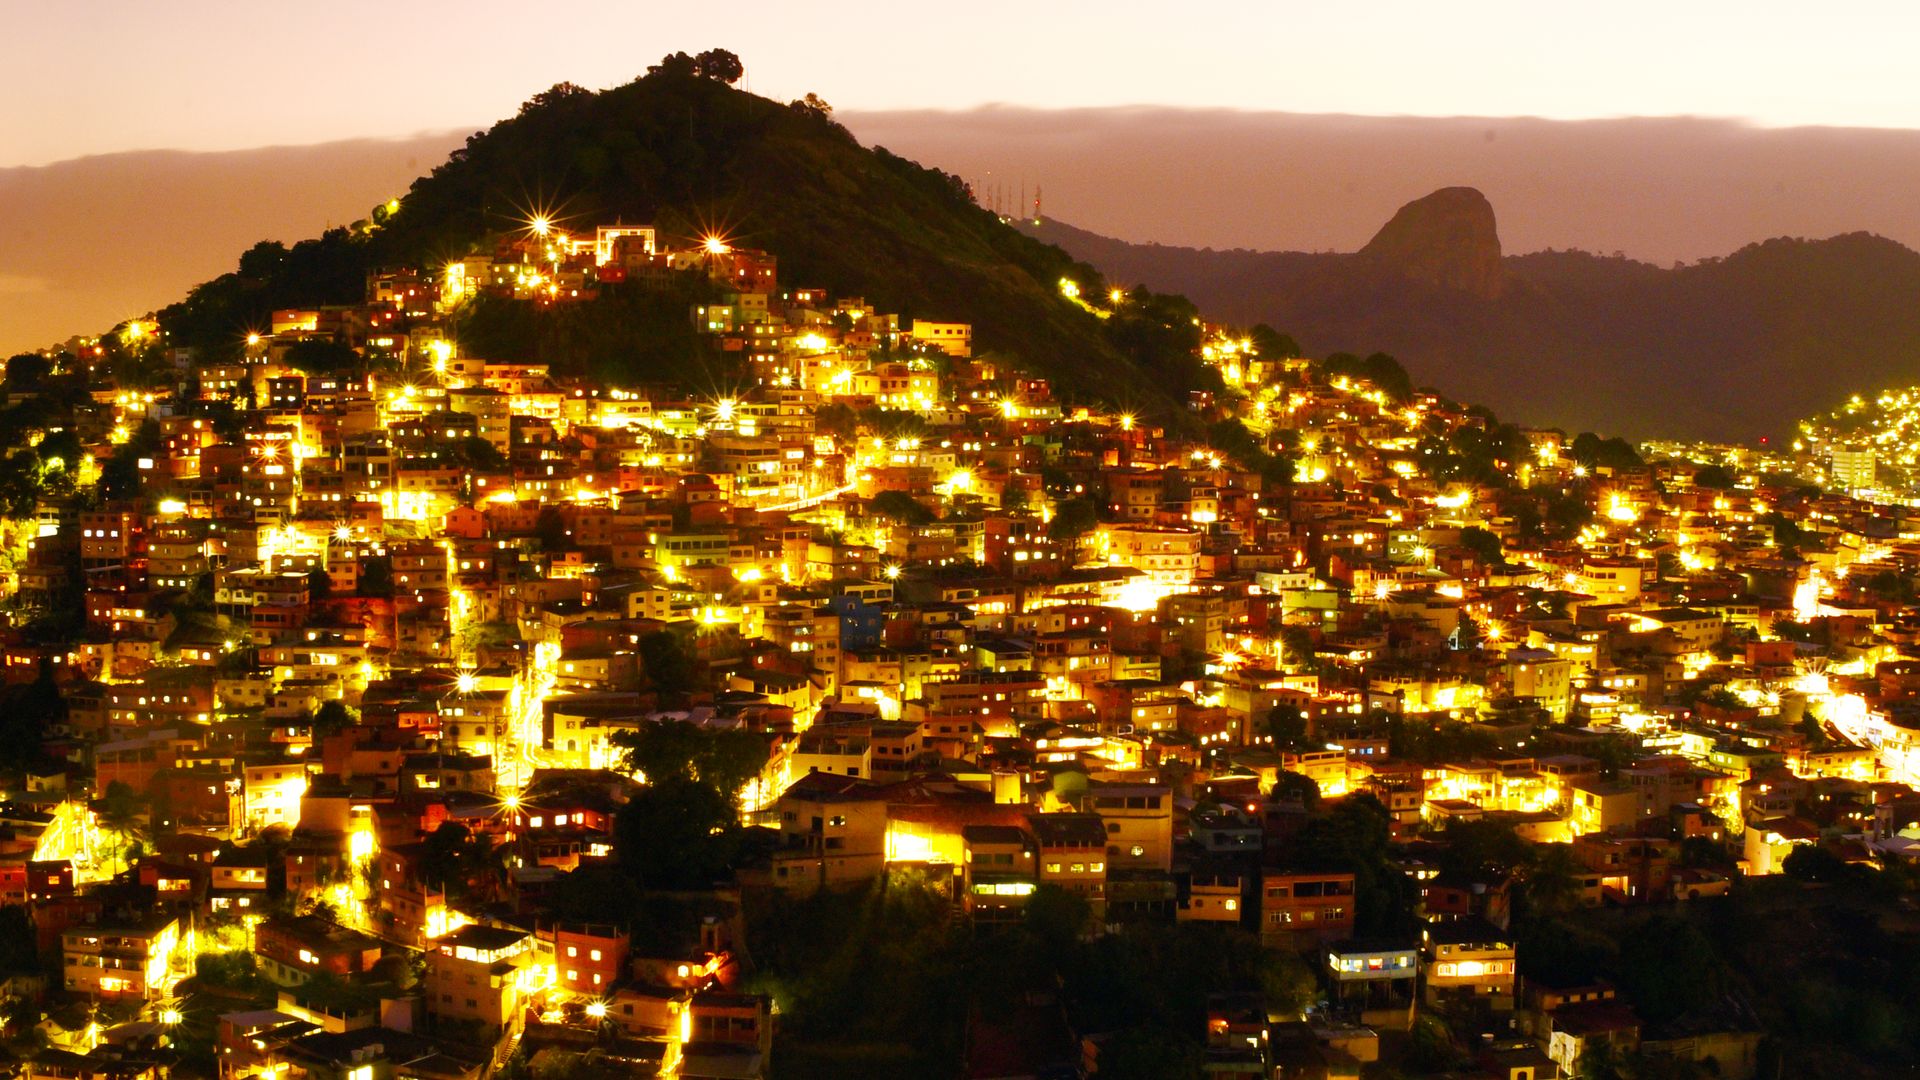 Cidade Presépio, ensaio fotográfico em longa exposição da Cidade de Vitória / Vista a partir do Monte Horebe de frente para o Complexo da Penha, e Vitória